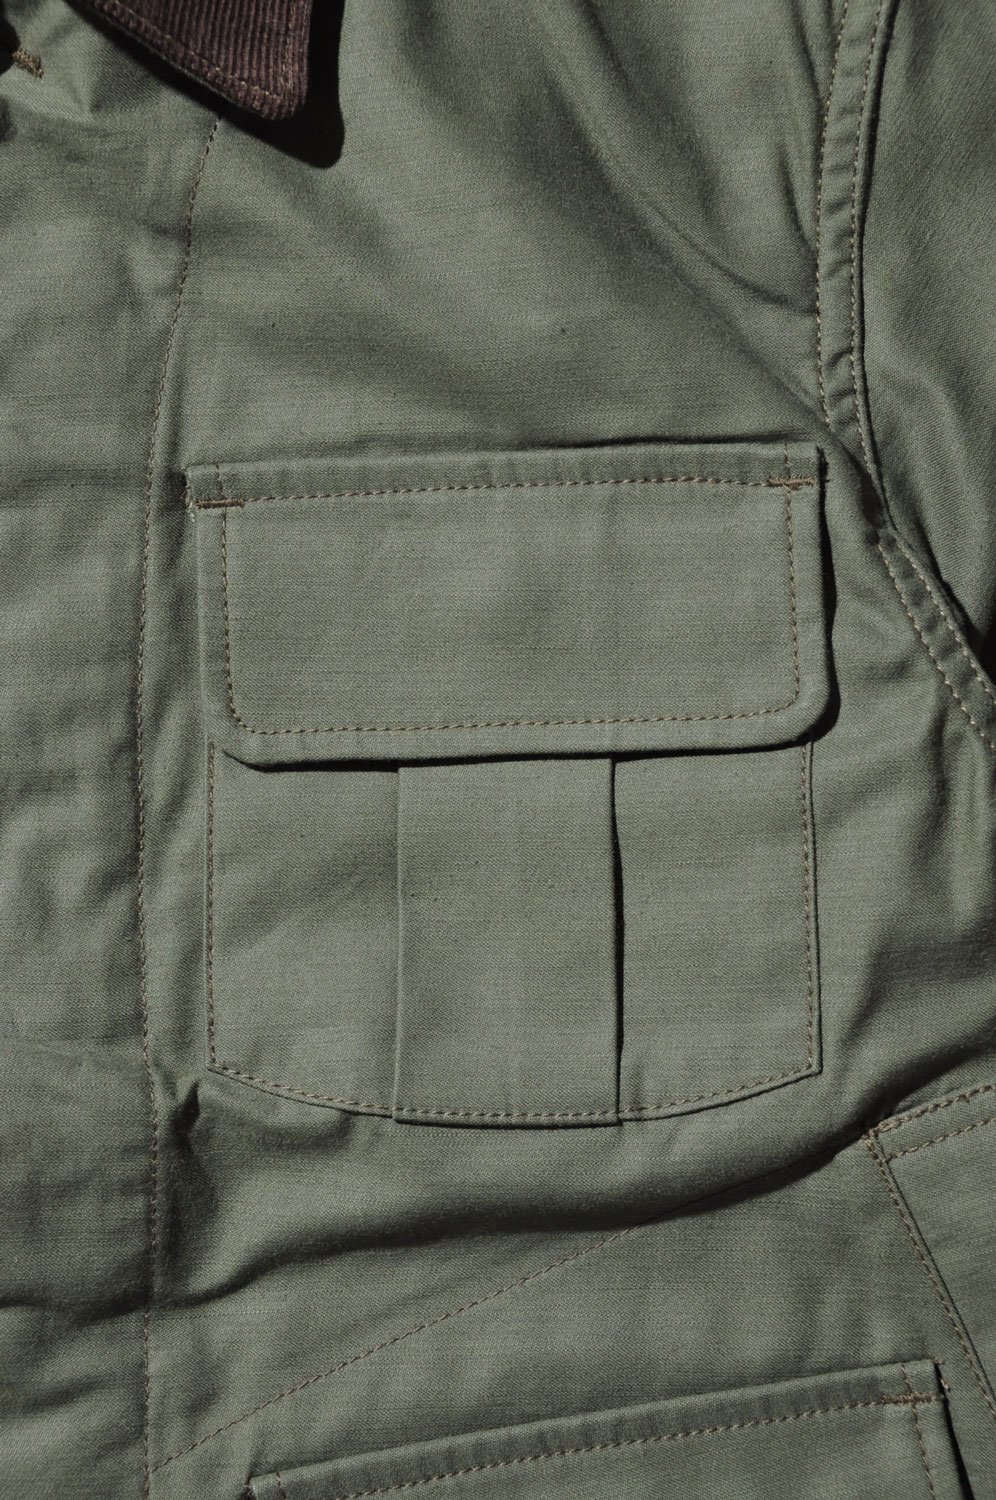 SAMURAI JEANS(サムライジーンズ) ハンティングジャケット UOJK-AW01 通販正規取扱 | ハーレムストア